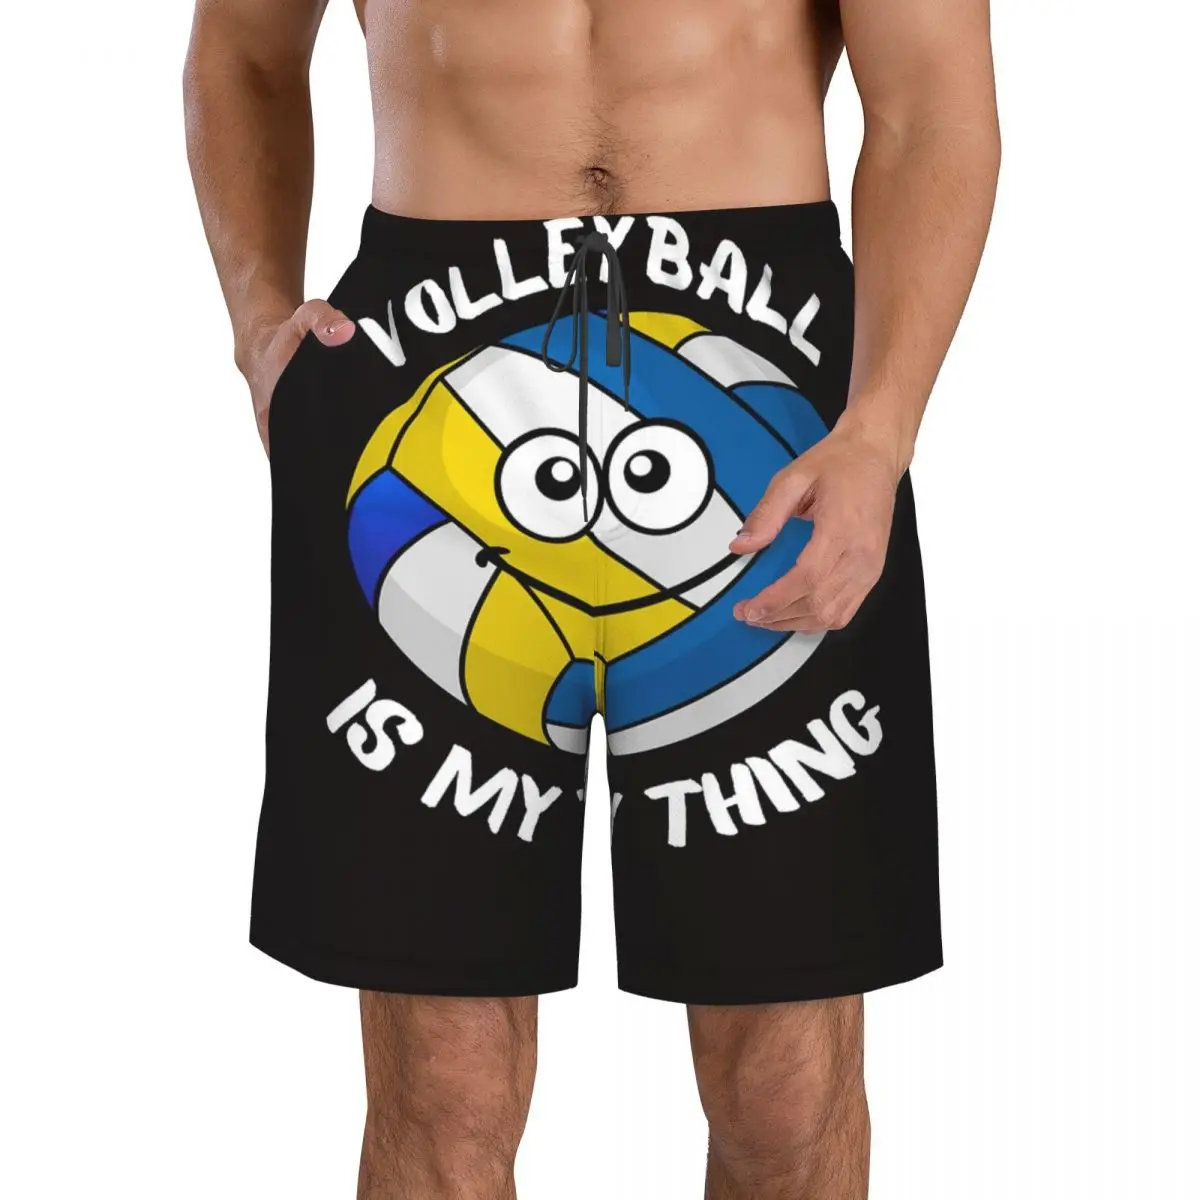 

Волейбол-это моя вещь, спорт, американский спорт, пляжные брюки для мирового спорта, повседневные брюки, приятные на ощупь эластичная талия для бега